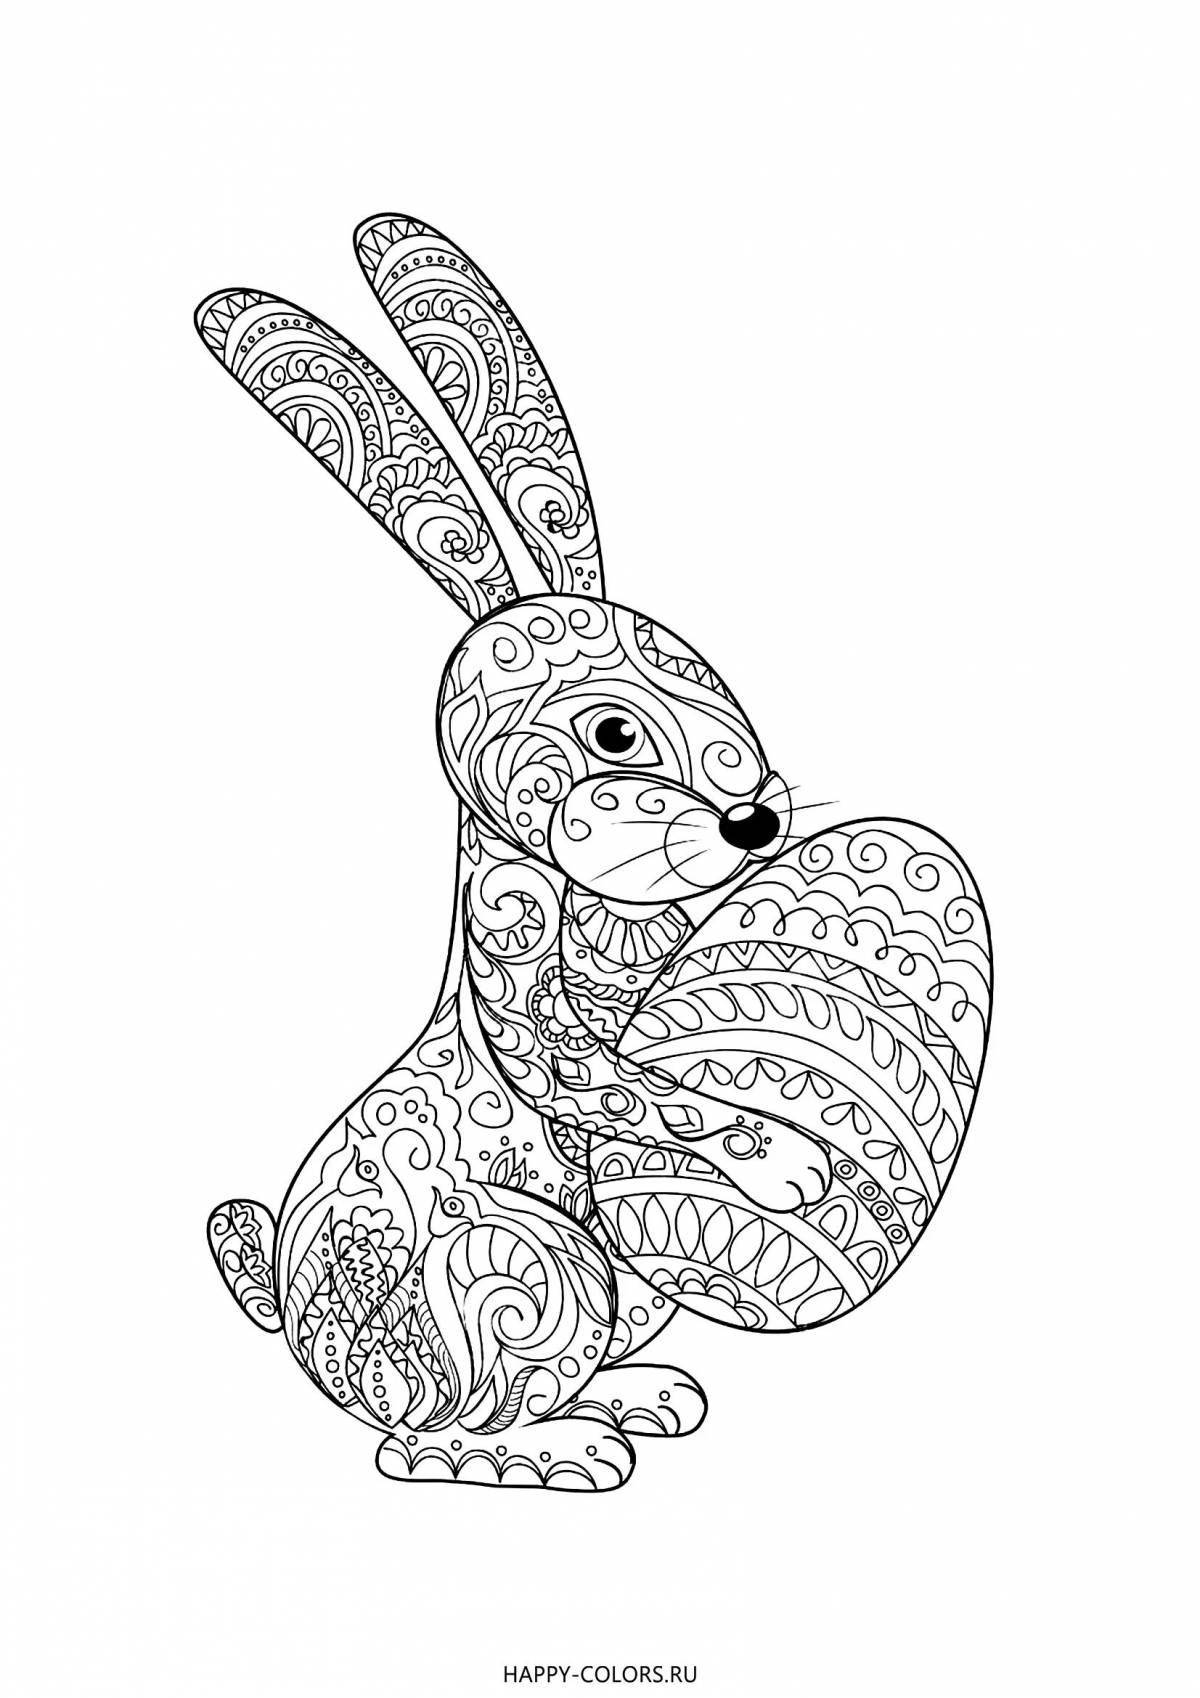 Забавная раскраска антистресс кролик